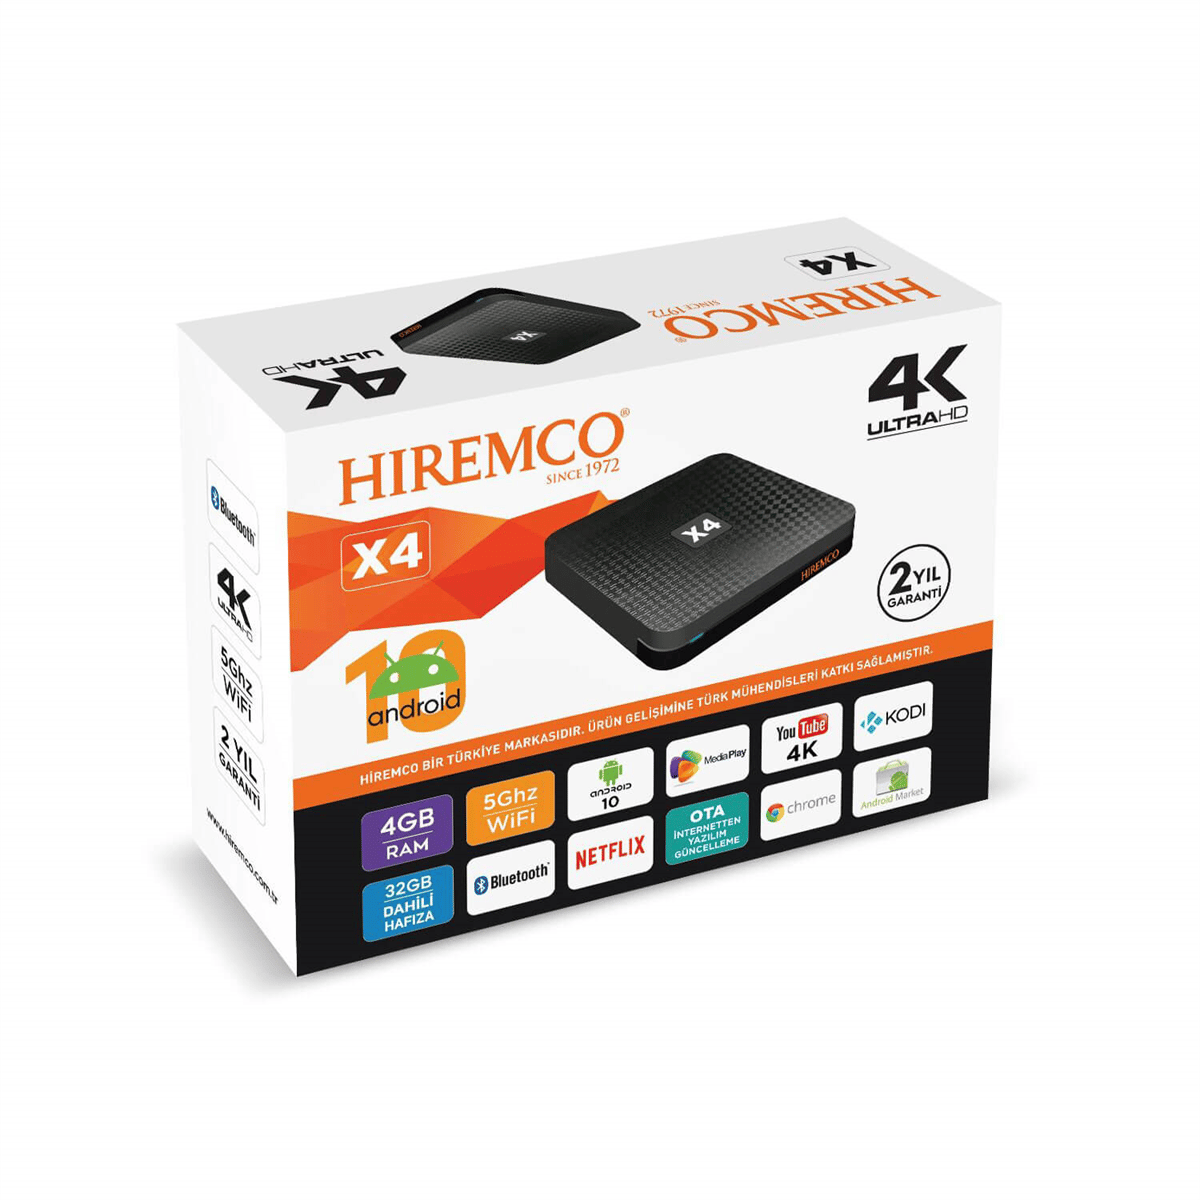 Hiremco X4 4K UltraHD Android Tv Box